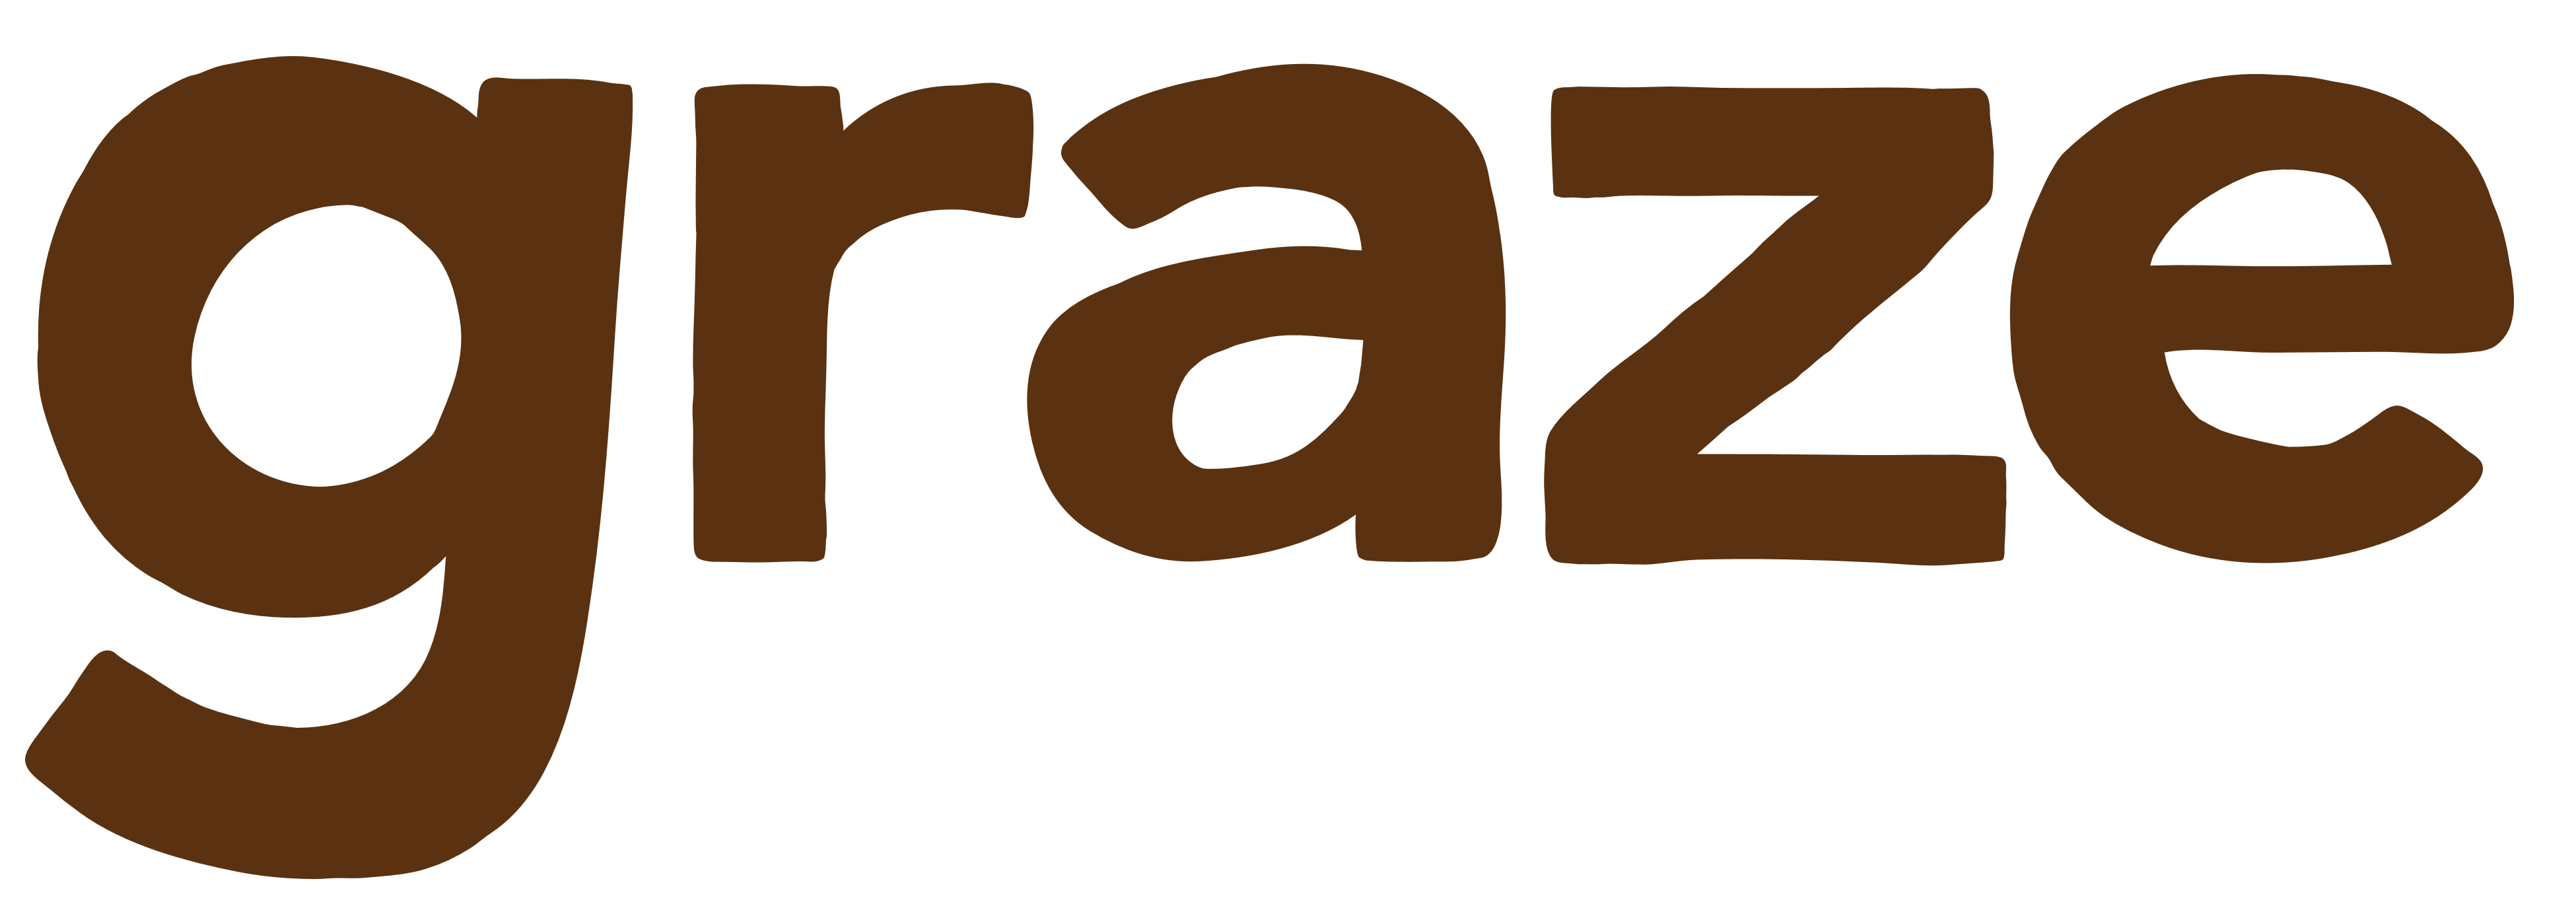 Graze.com Logo - Graze